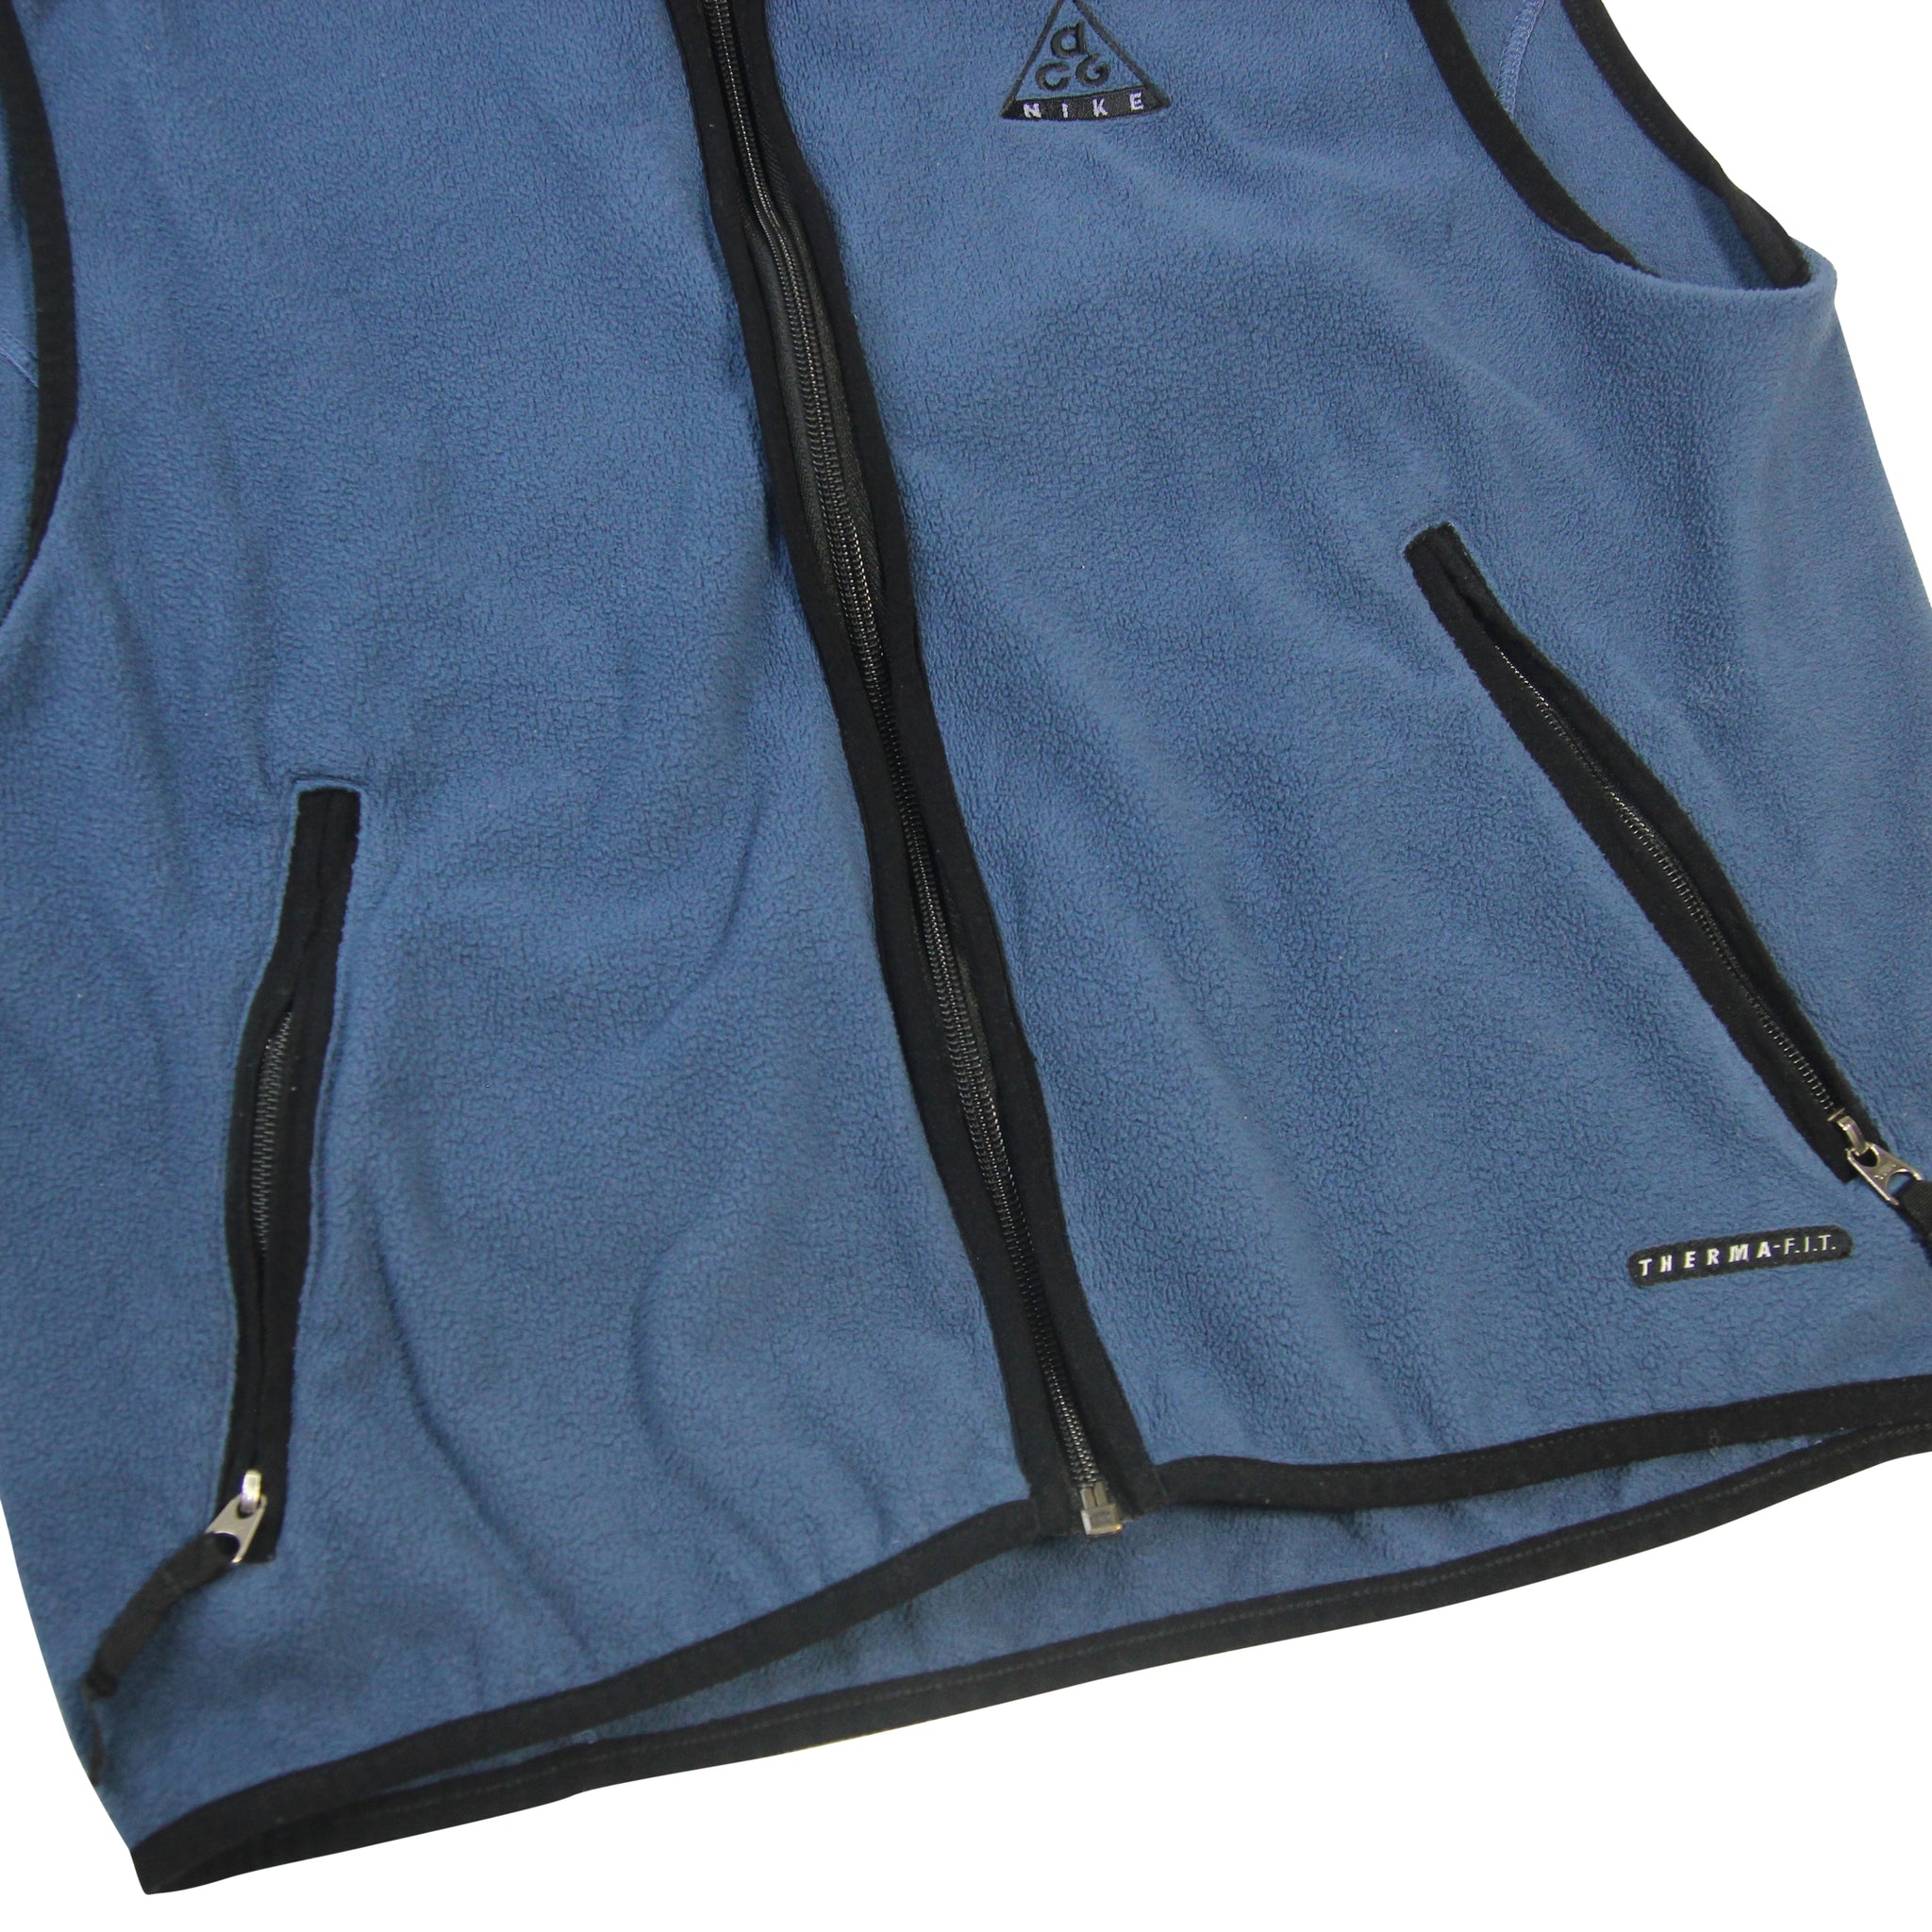 Vintage Nike ACG Thermal-fit Fleece Vest - S – Jak of all Vintage